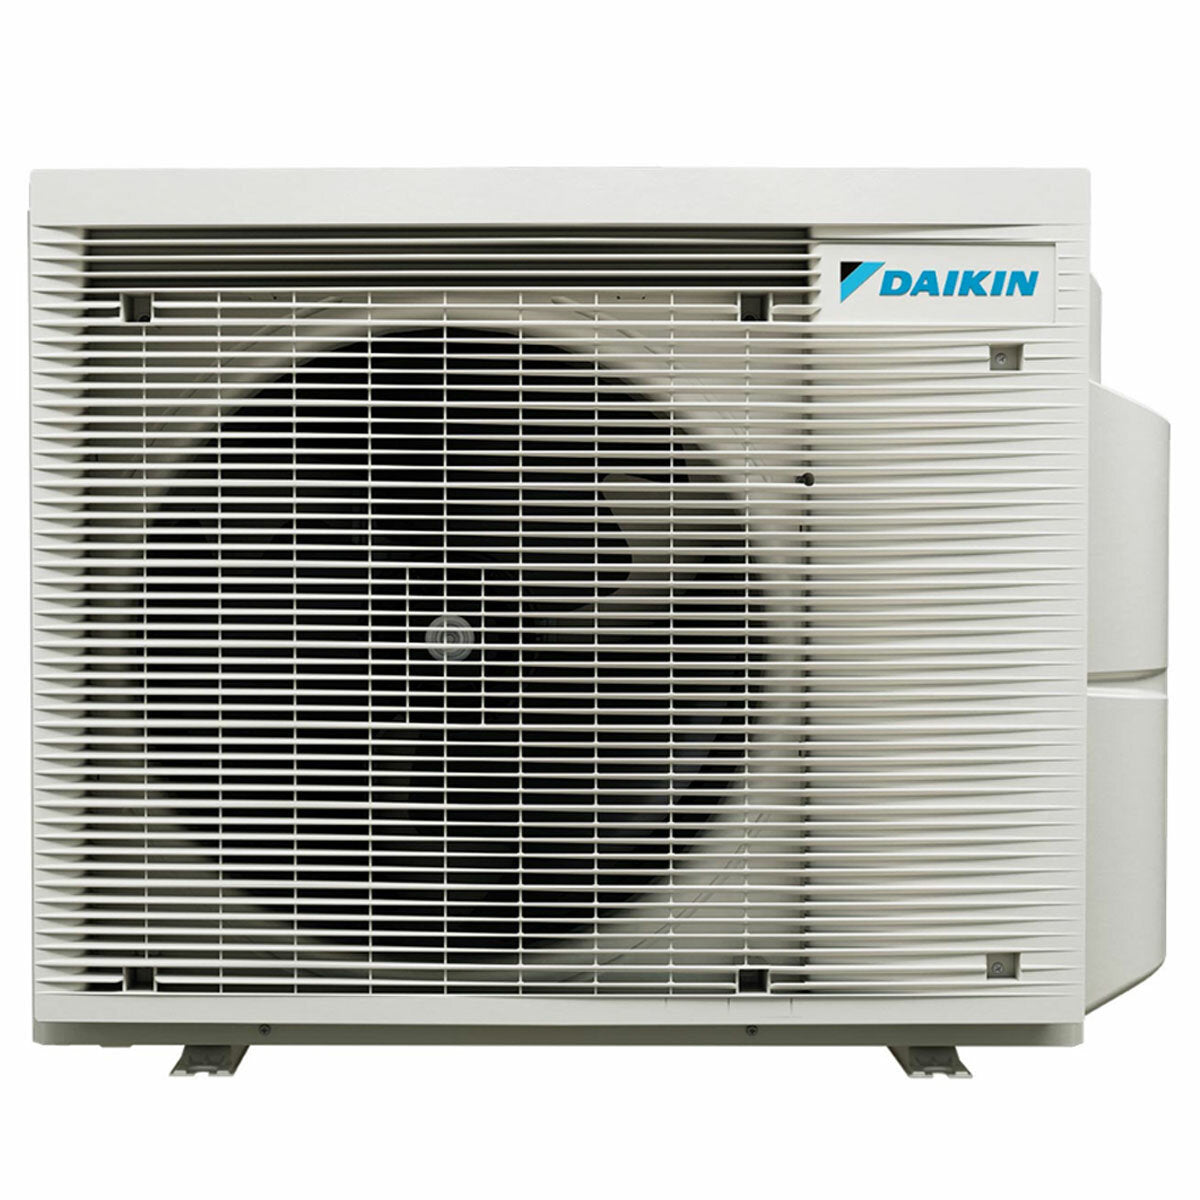 Daikin Stylish Trial Split Klimaanlage 9000 + 9000 + 9000 BTU Inverter A +++ WLAN Außengerät 5,2 kW